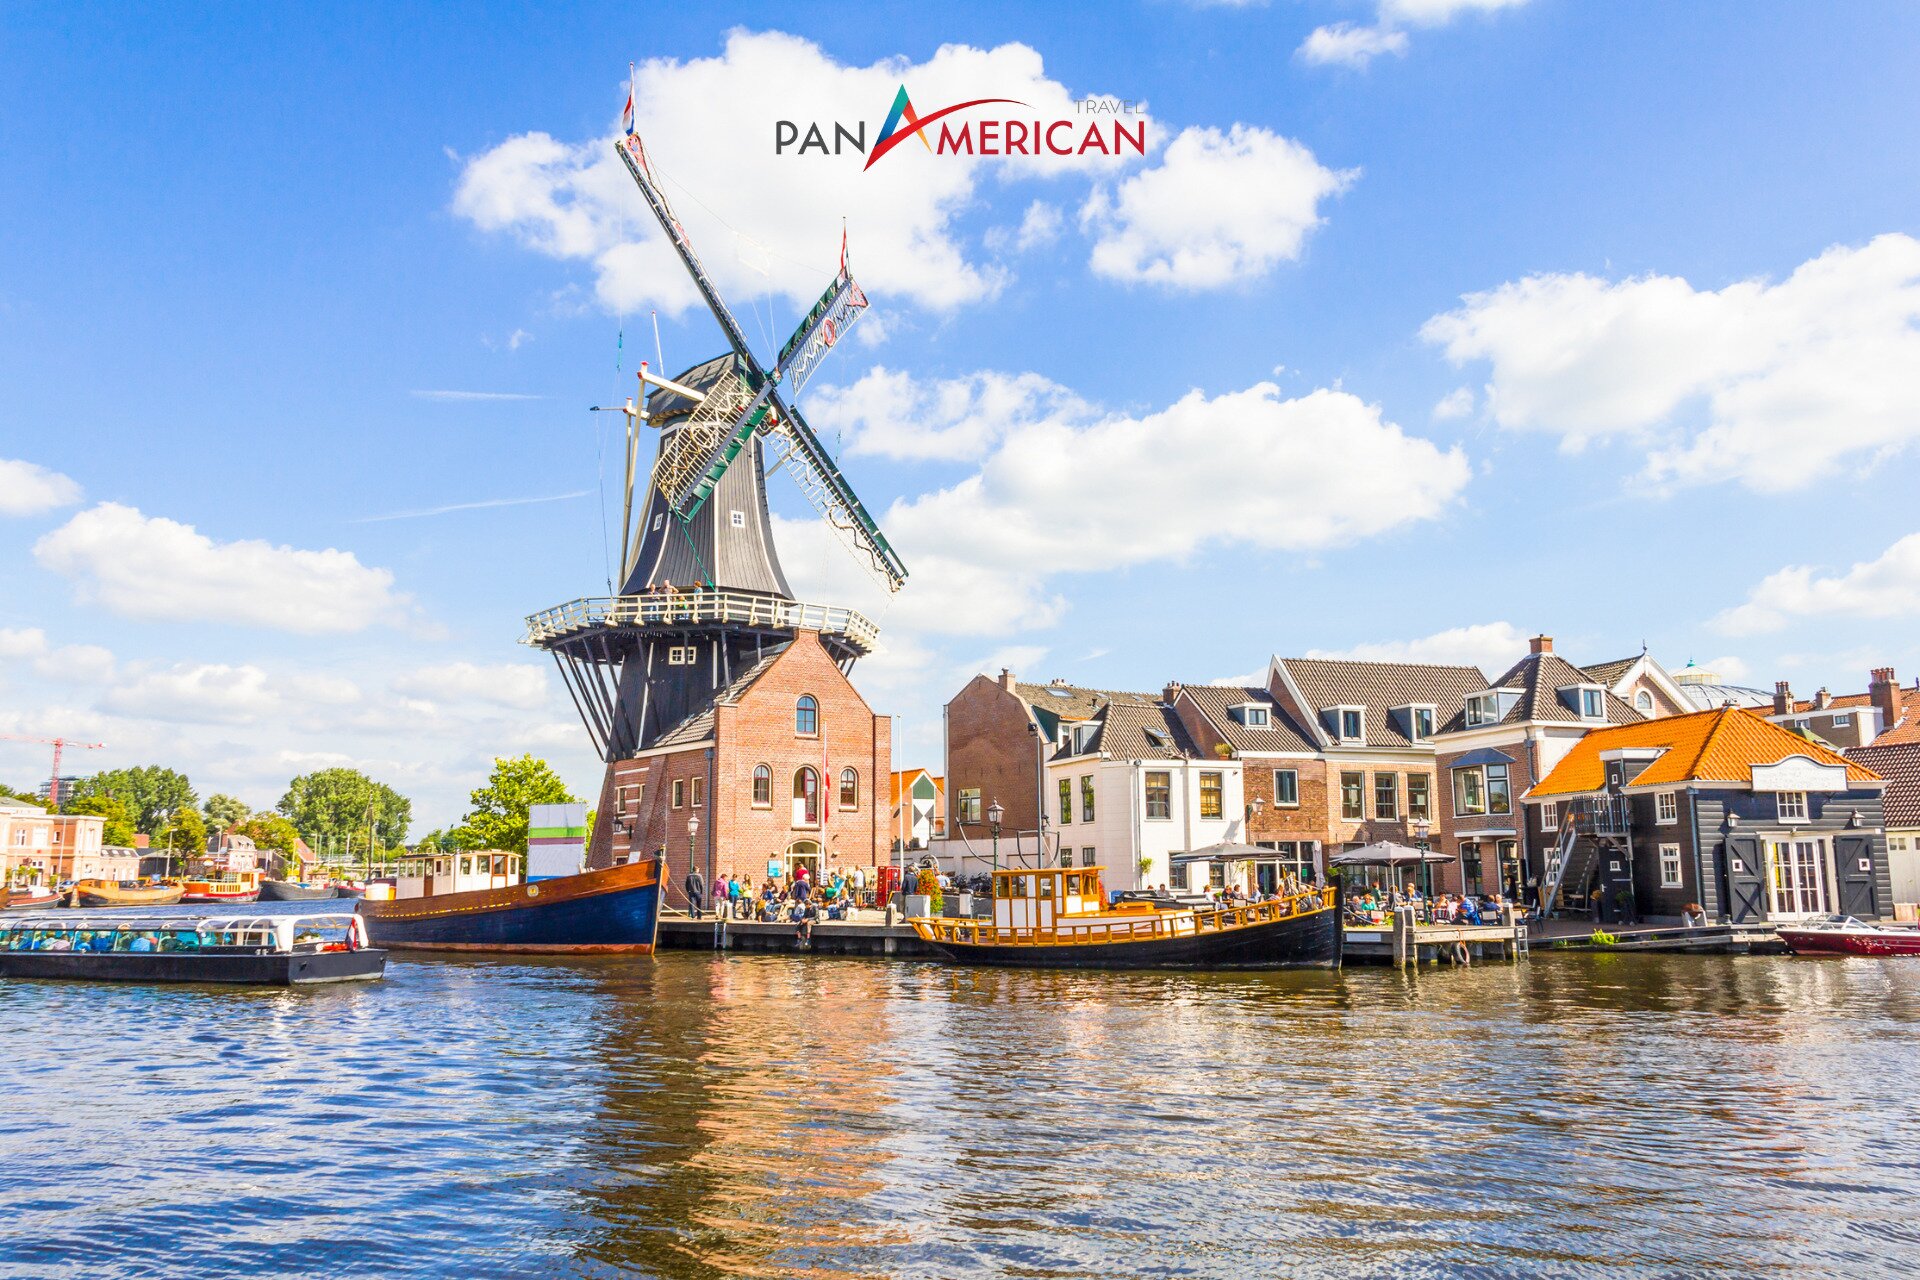 Lượng khách du lịch lớn ghé thăm Hà Lan mỗi năm bởi Cối Xay Gió